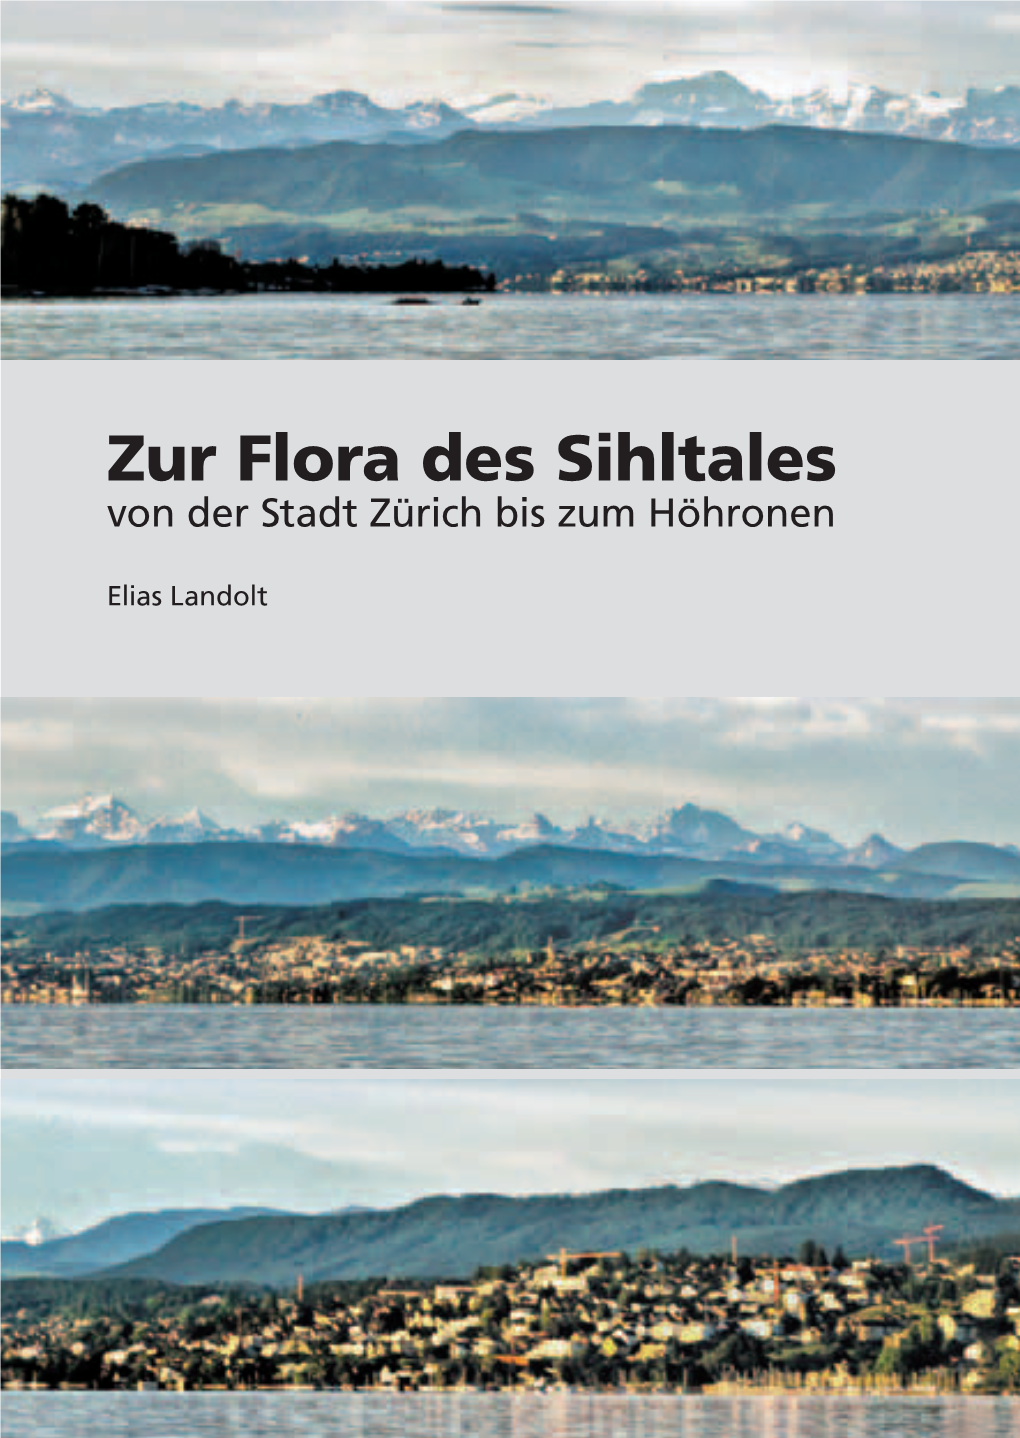 Zur Flora Des Sihltales. Von Der Stadt Zürich Bis Zum Höhronen